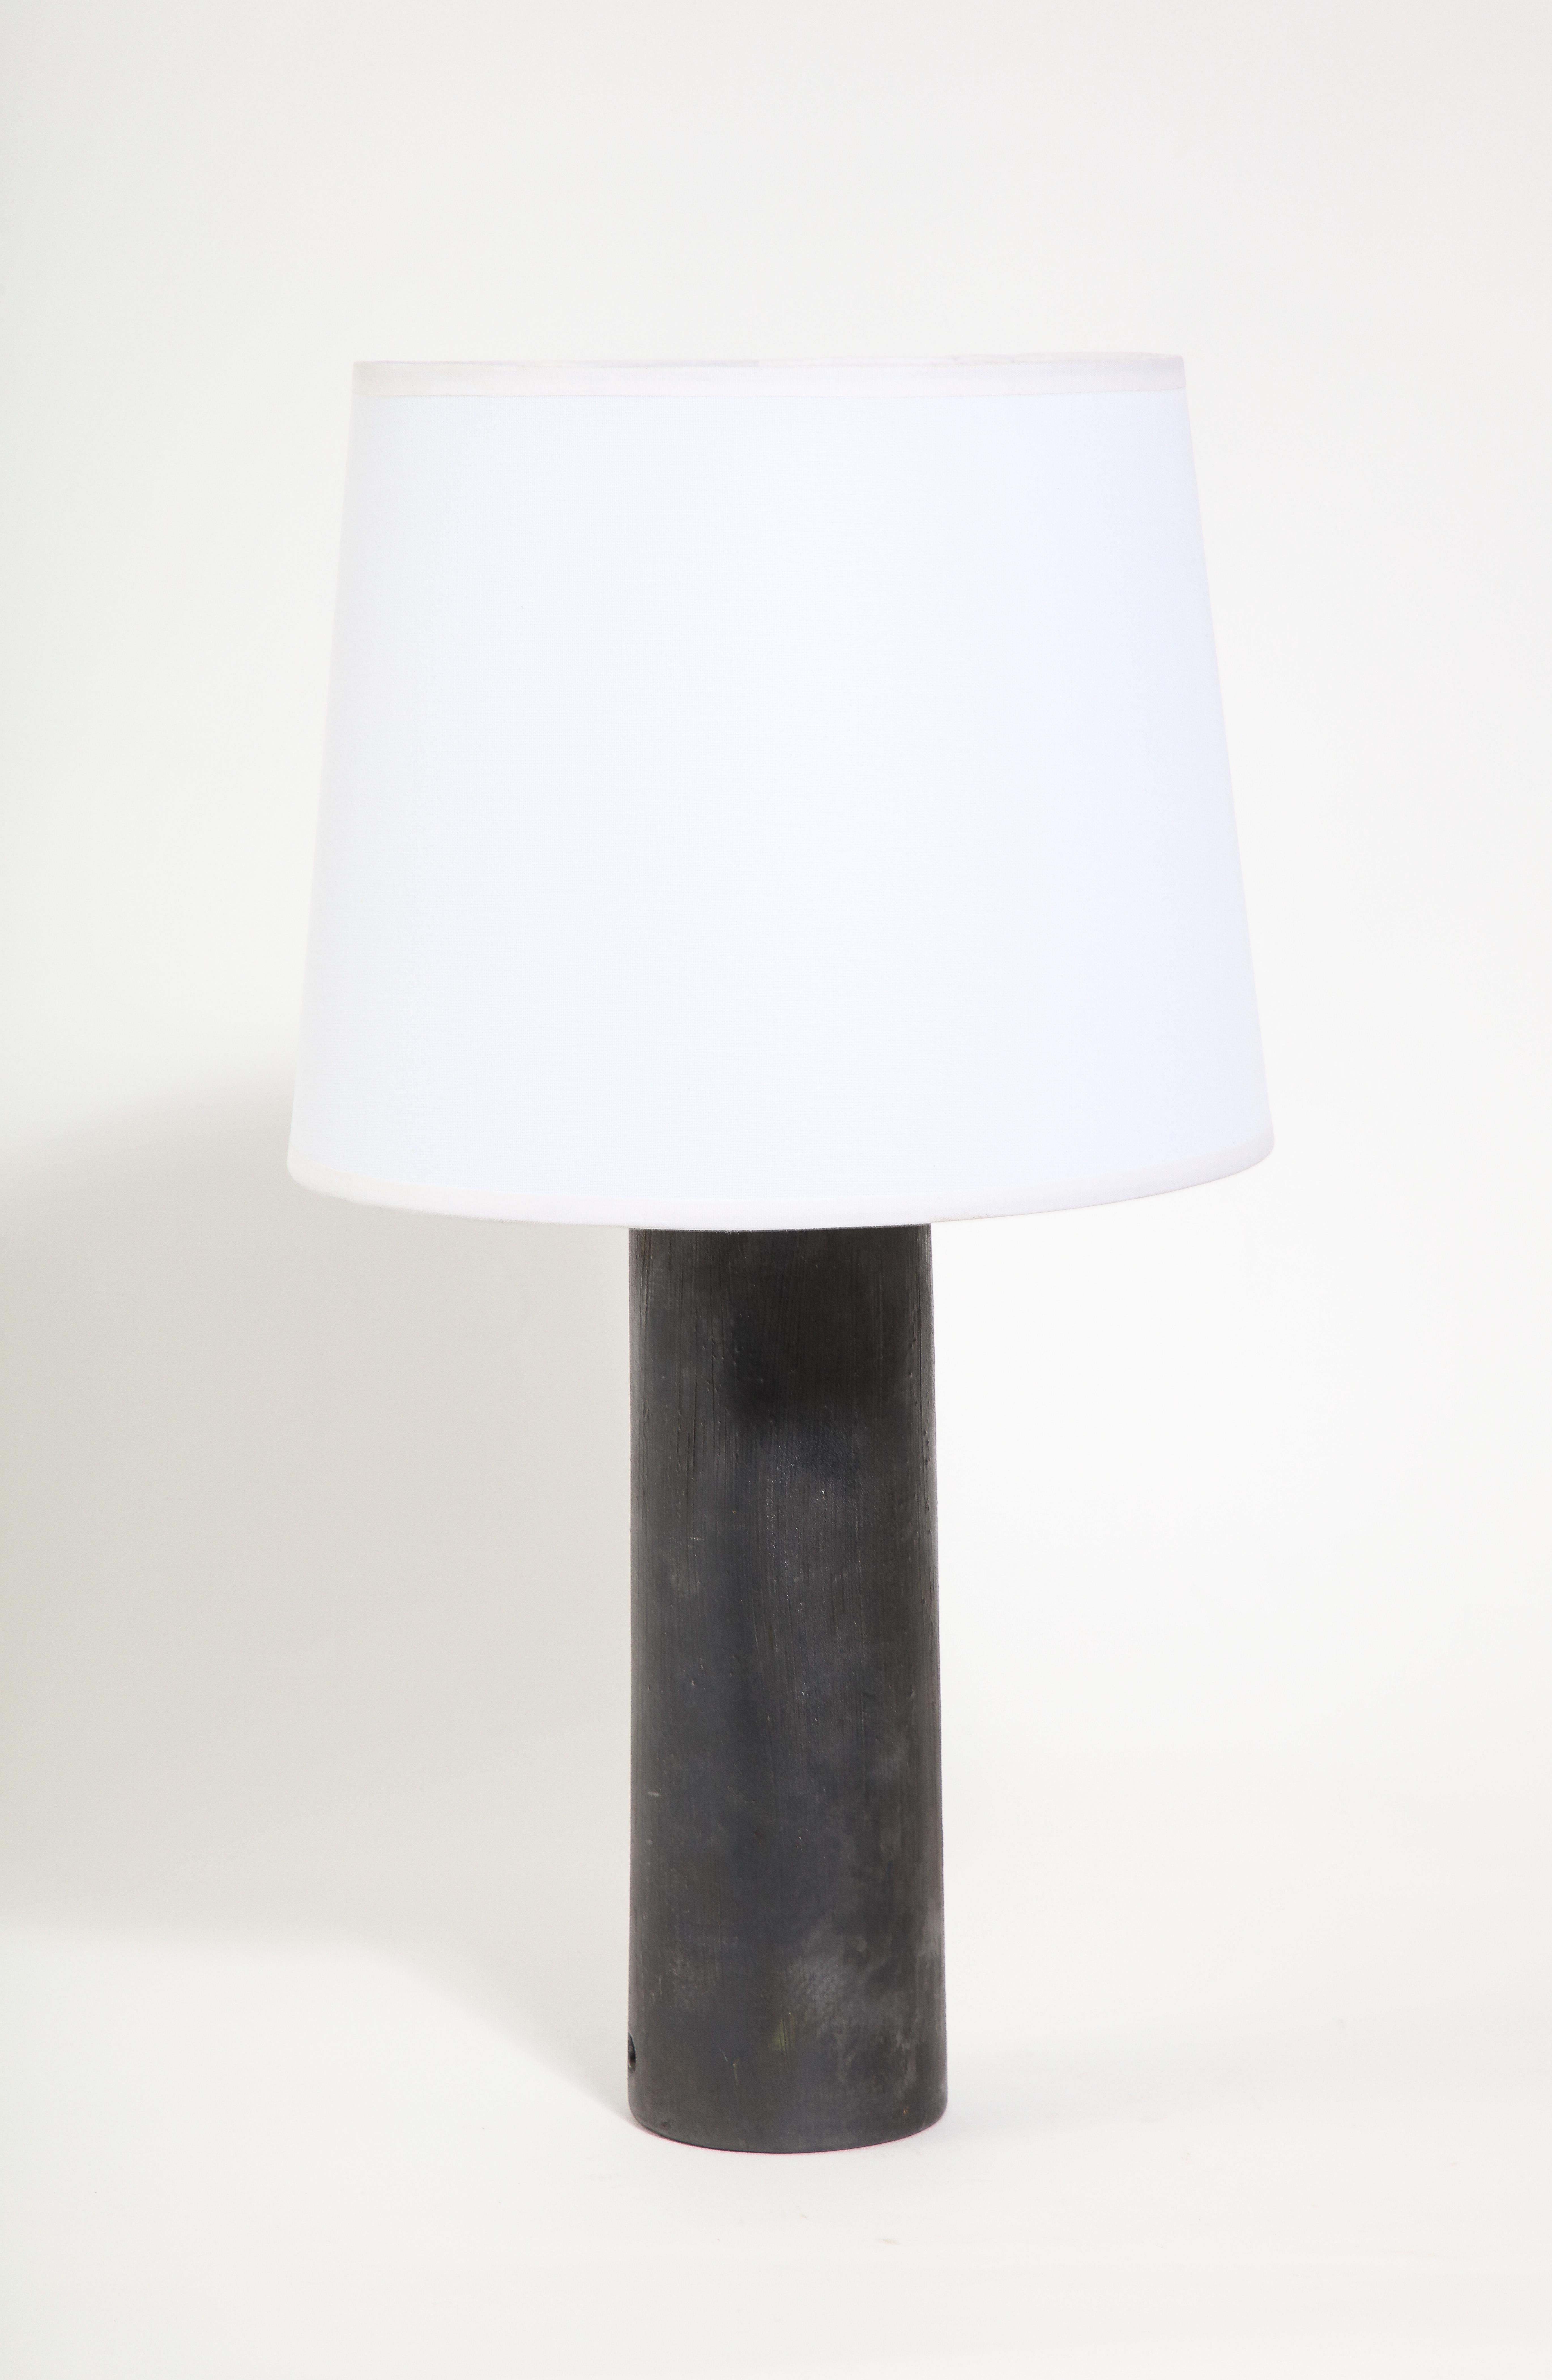 Lampe cylindrique en céramique à la manière de Jouve avec une glaçure métallique Charcoal.
